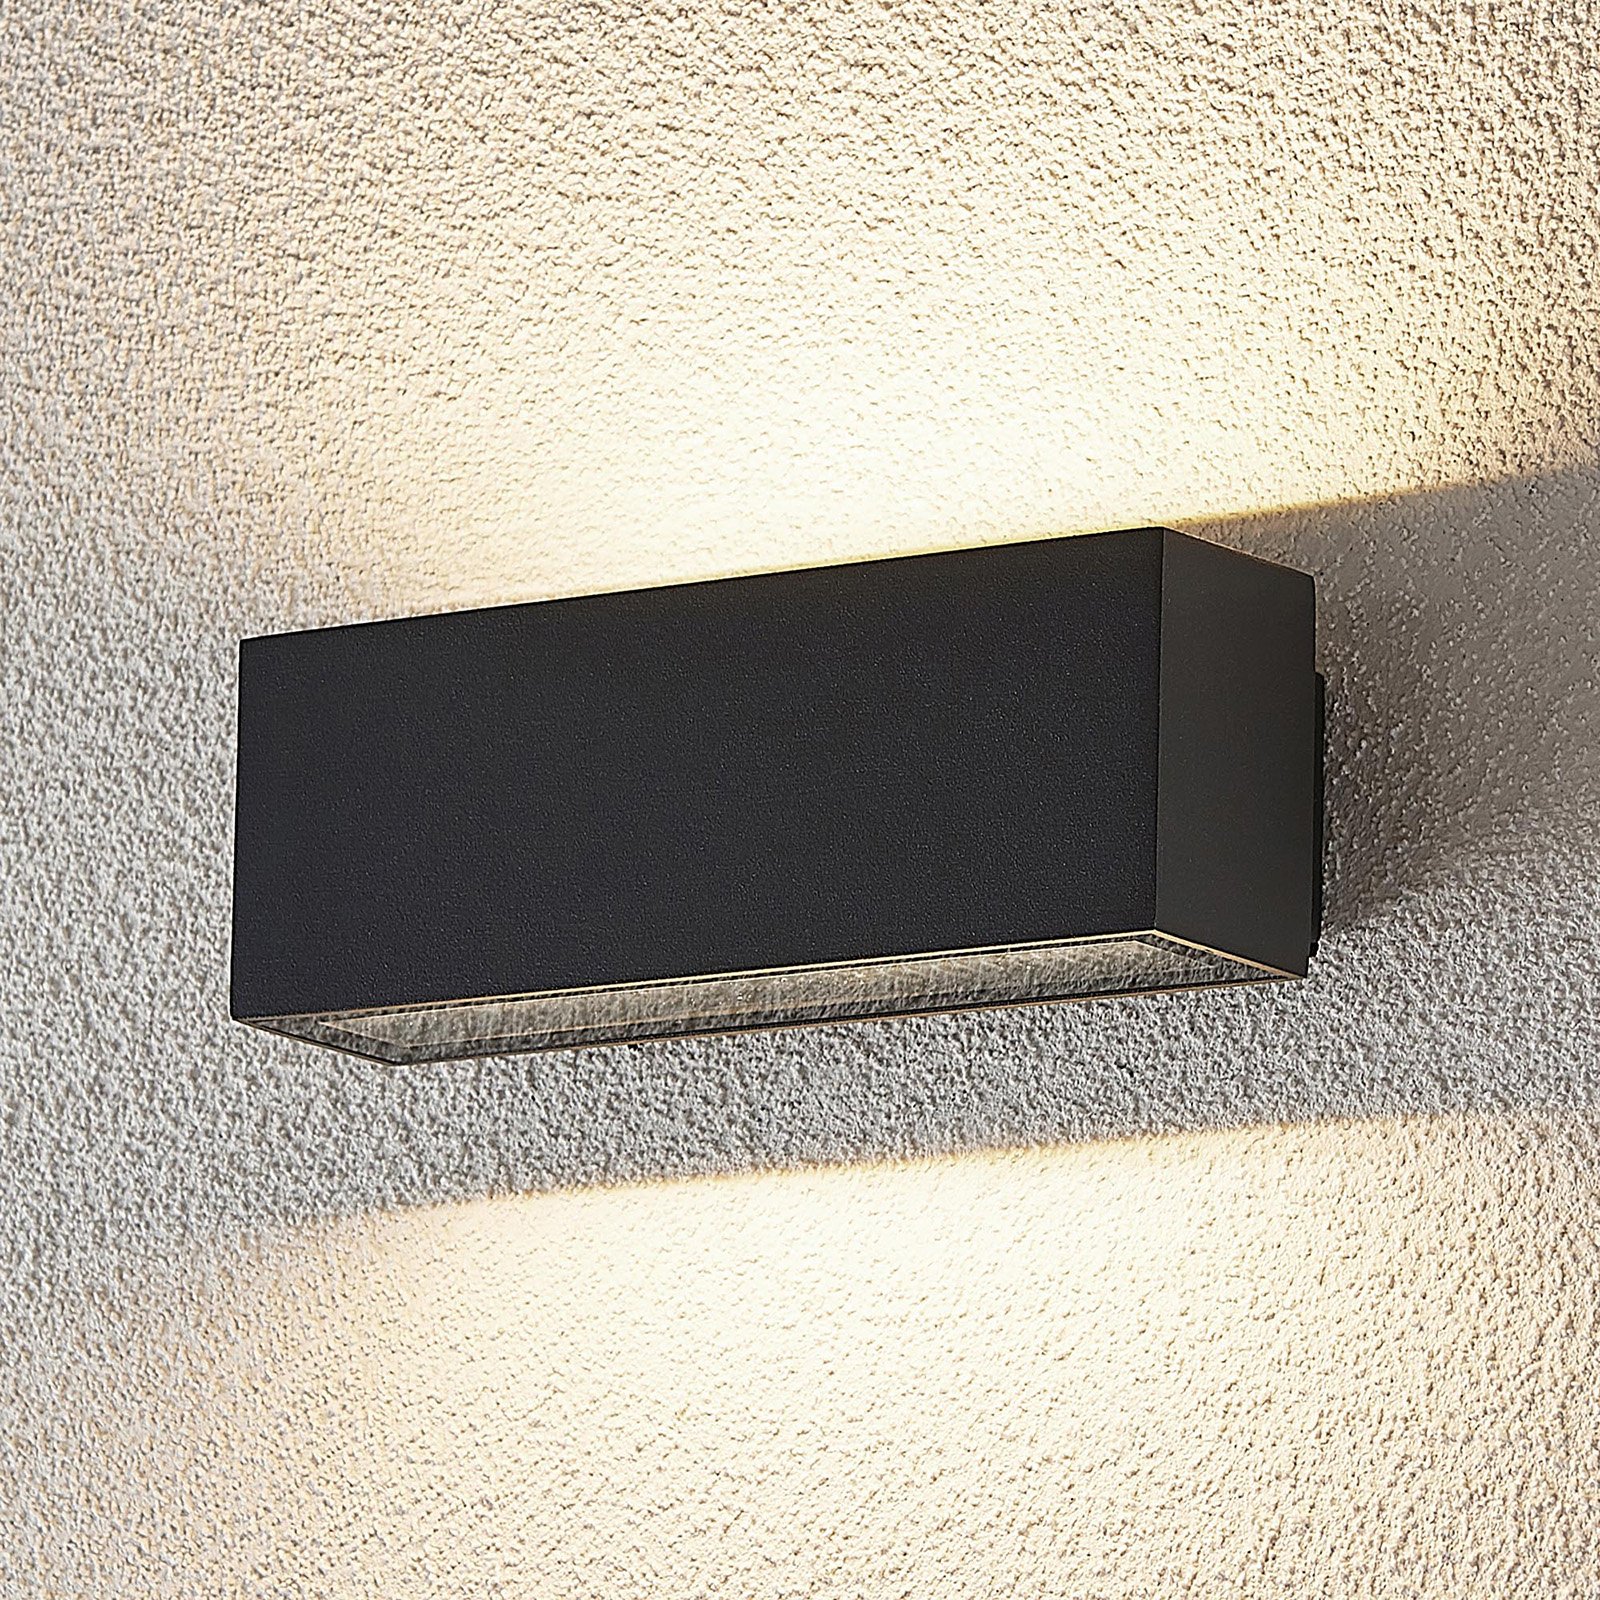 Kinkiet zewnętrzny LED Oliver, ciemnoszary, 18 cm